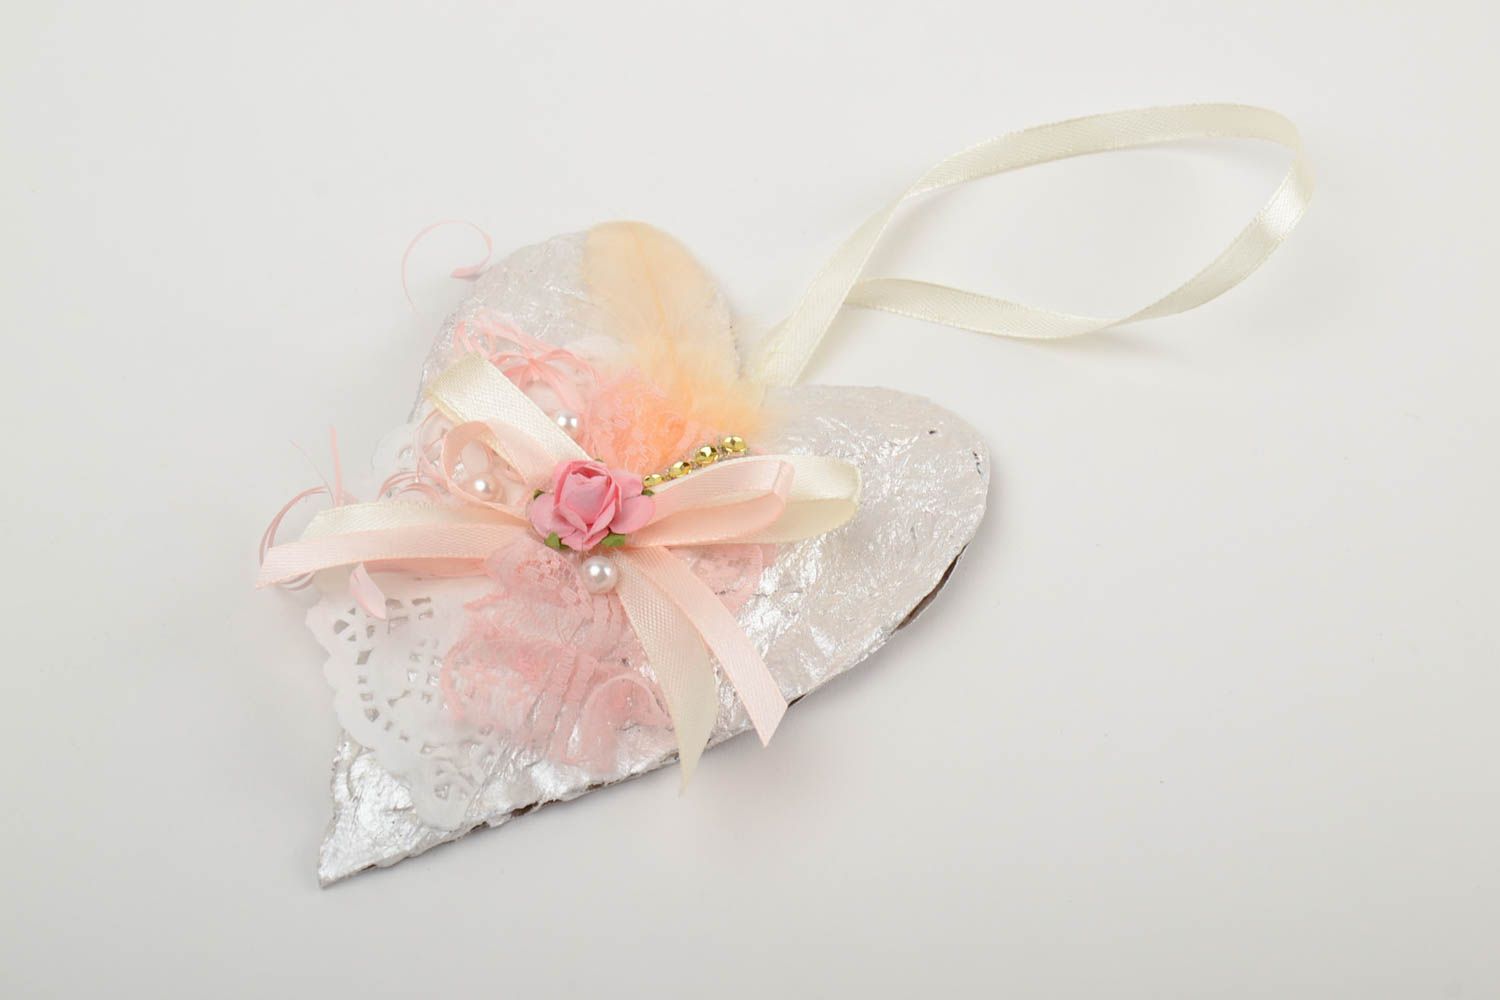 Интерьерная подвеска из картона сердце ручной работы валентинка с кружевом фото 2